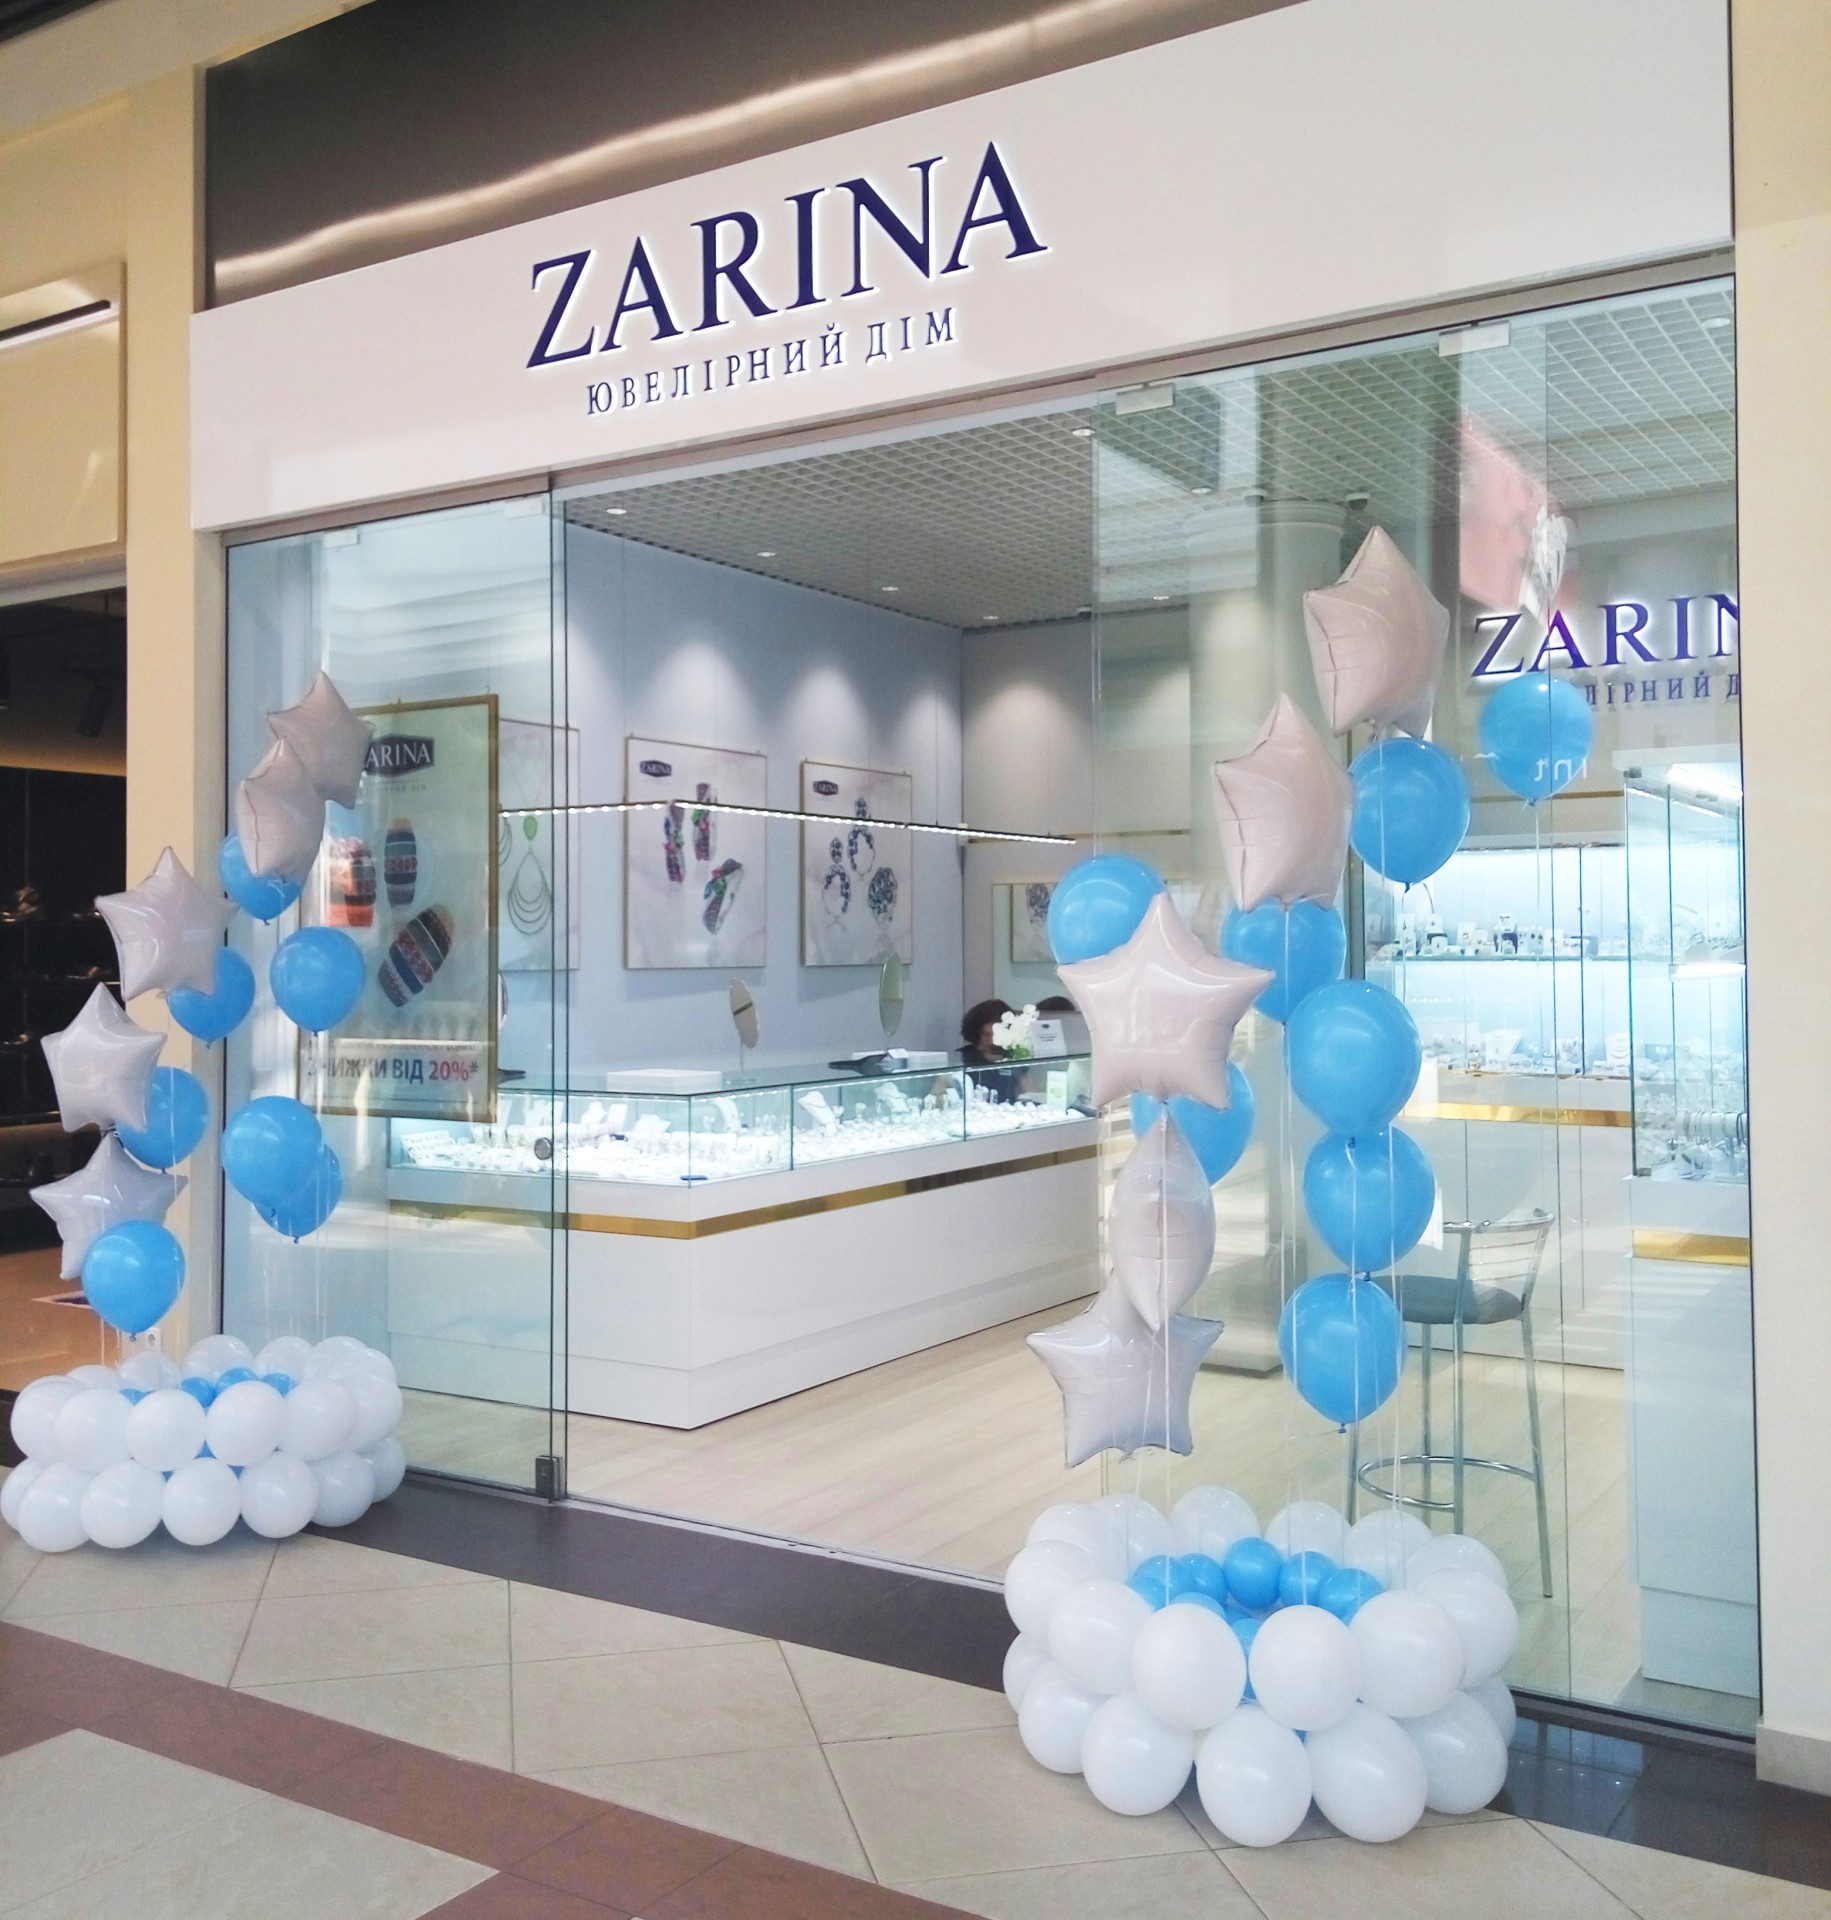 Я уверен, что открытие бутика ZARINA в новом формате - это яркое продолжение успешного развития нашего партнерства, которое, безусловно, будет интересен и для посетителей ТЦ Globus », - комментирует руководитель администрации ТЦ Globus Олесь Щирица